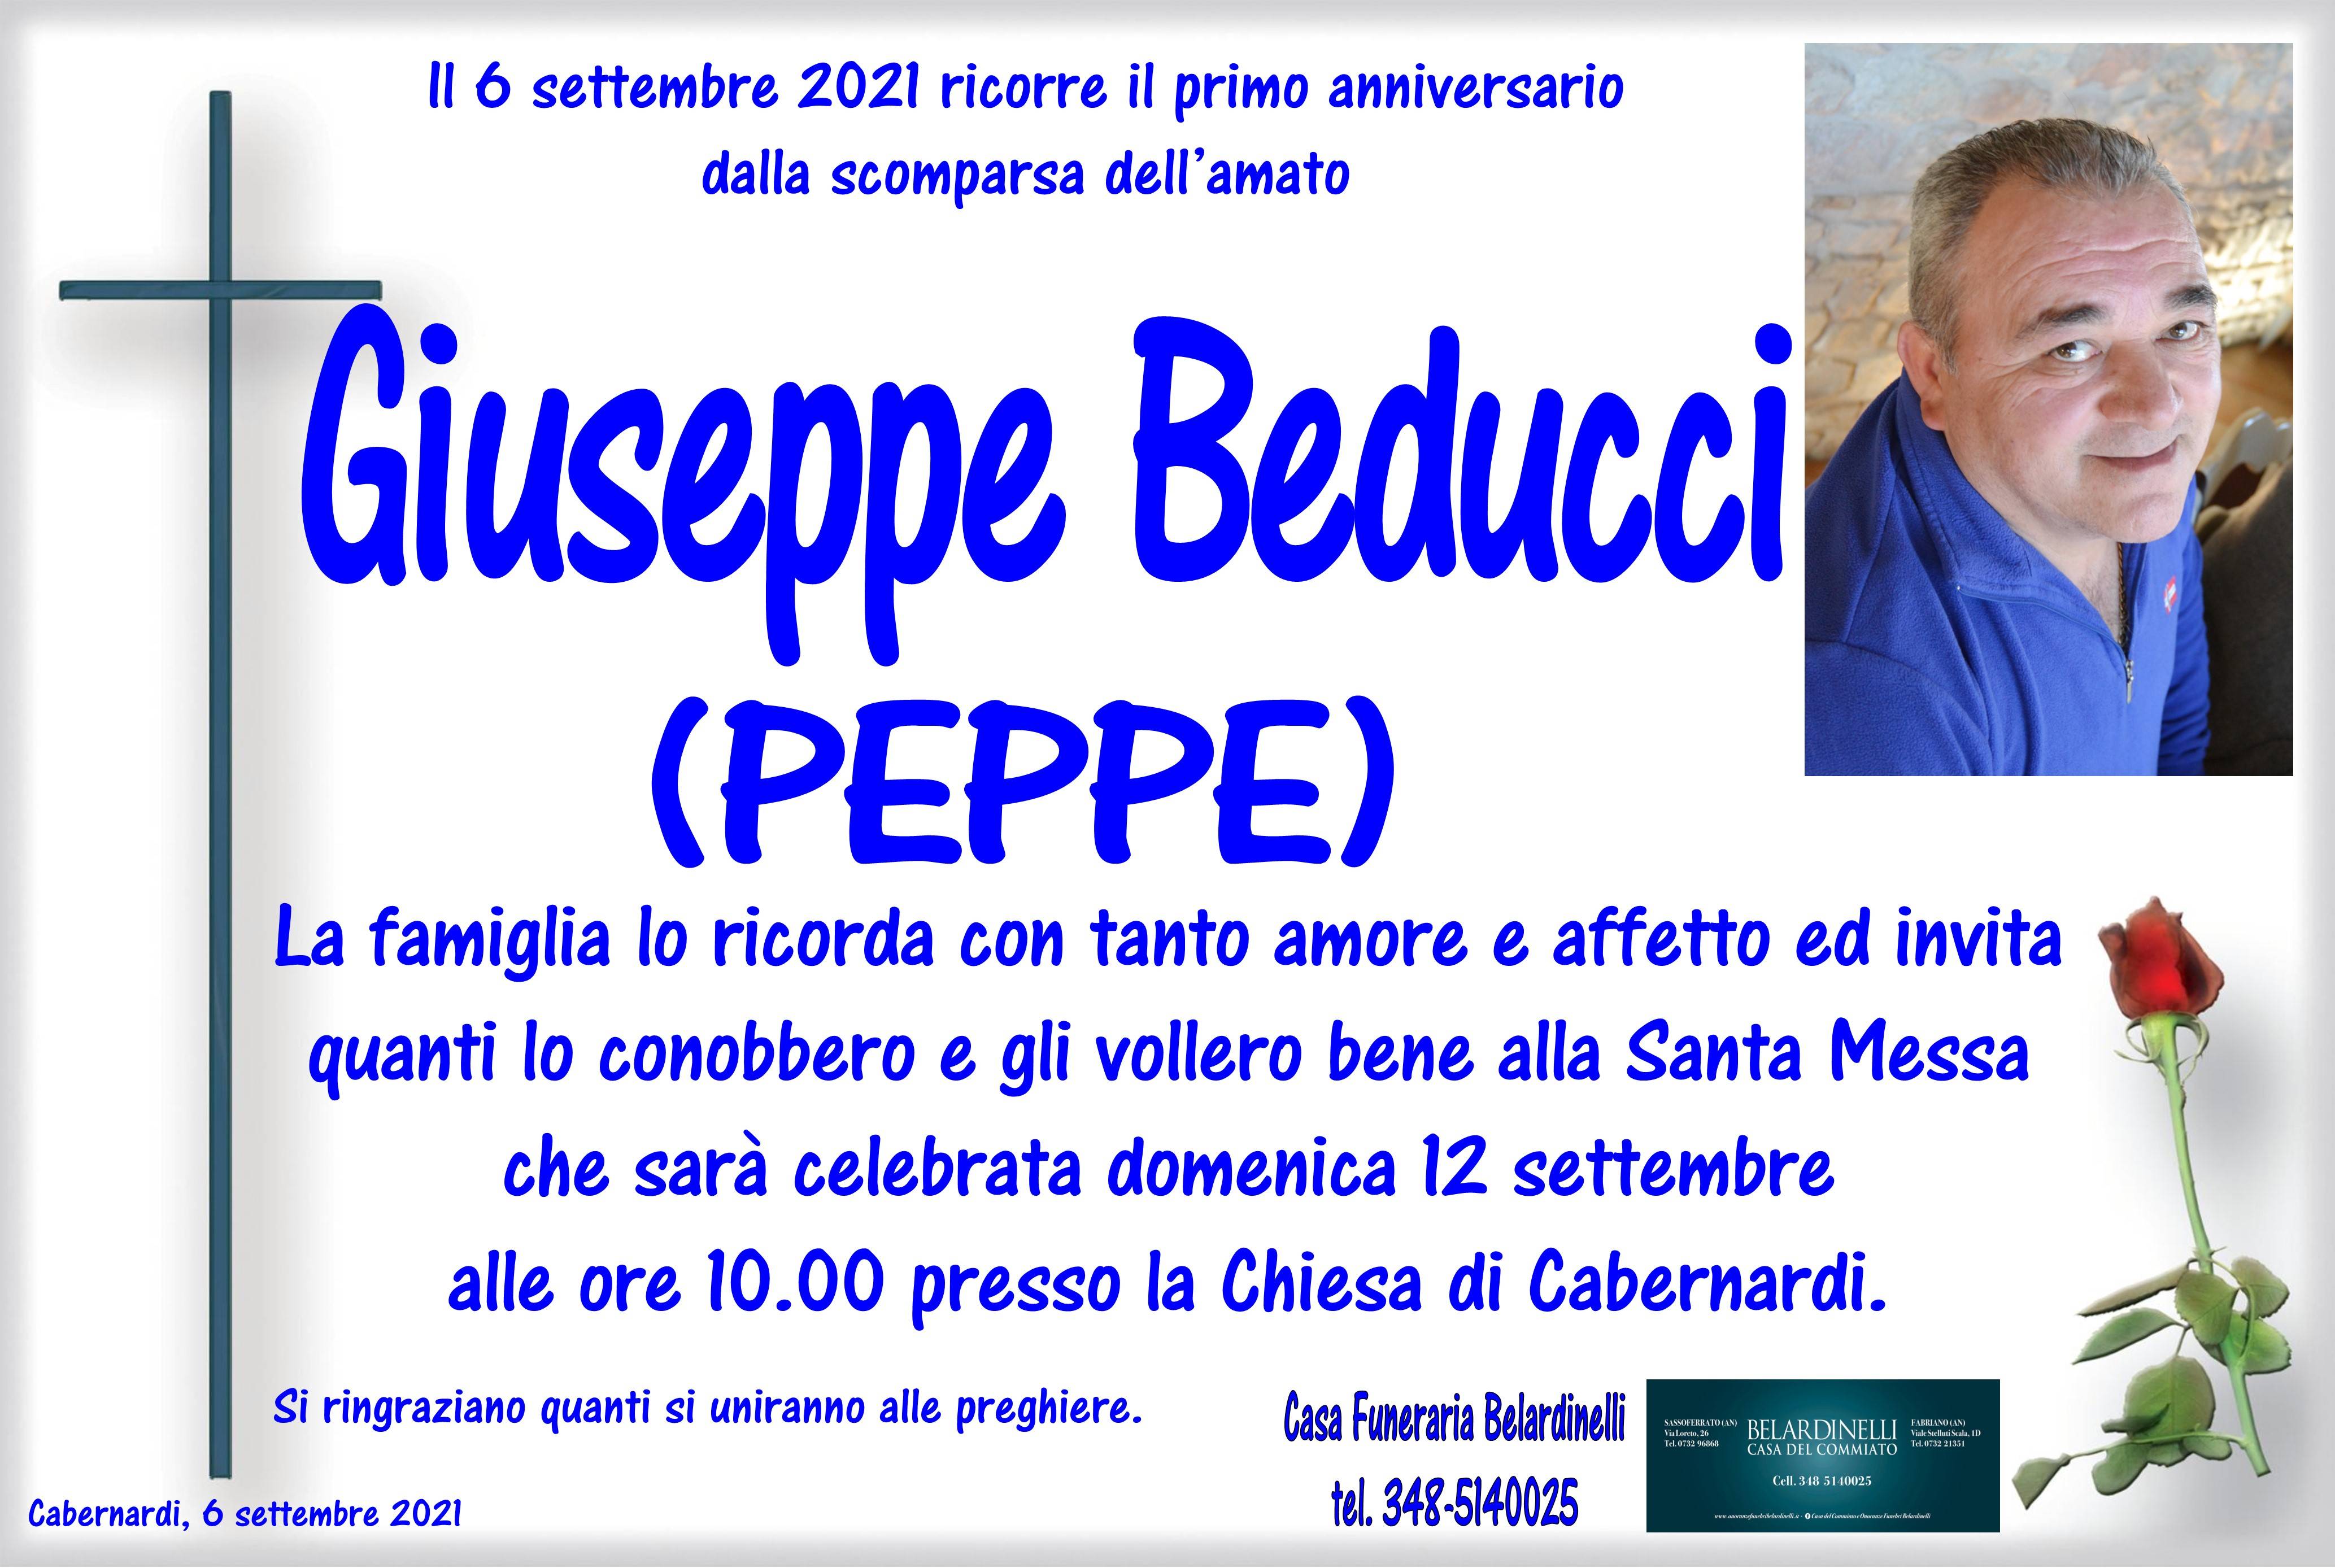 Giuseppe Beducci